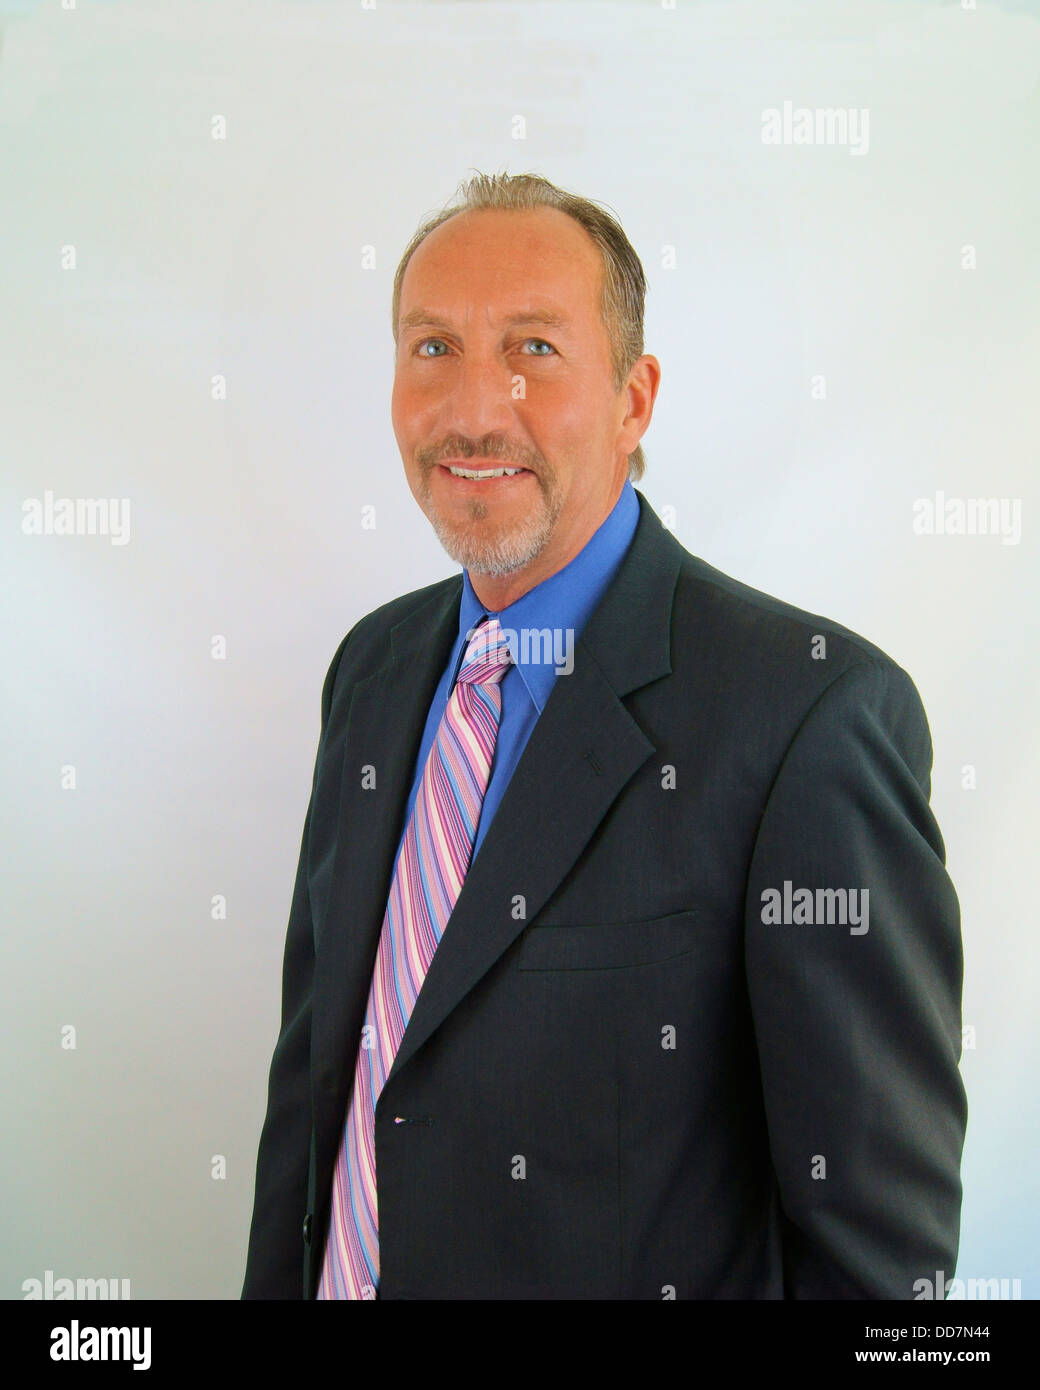 L'homme d'affaires avec cravate rose et bleu shirt Banque D'Images